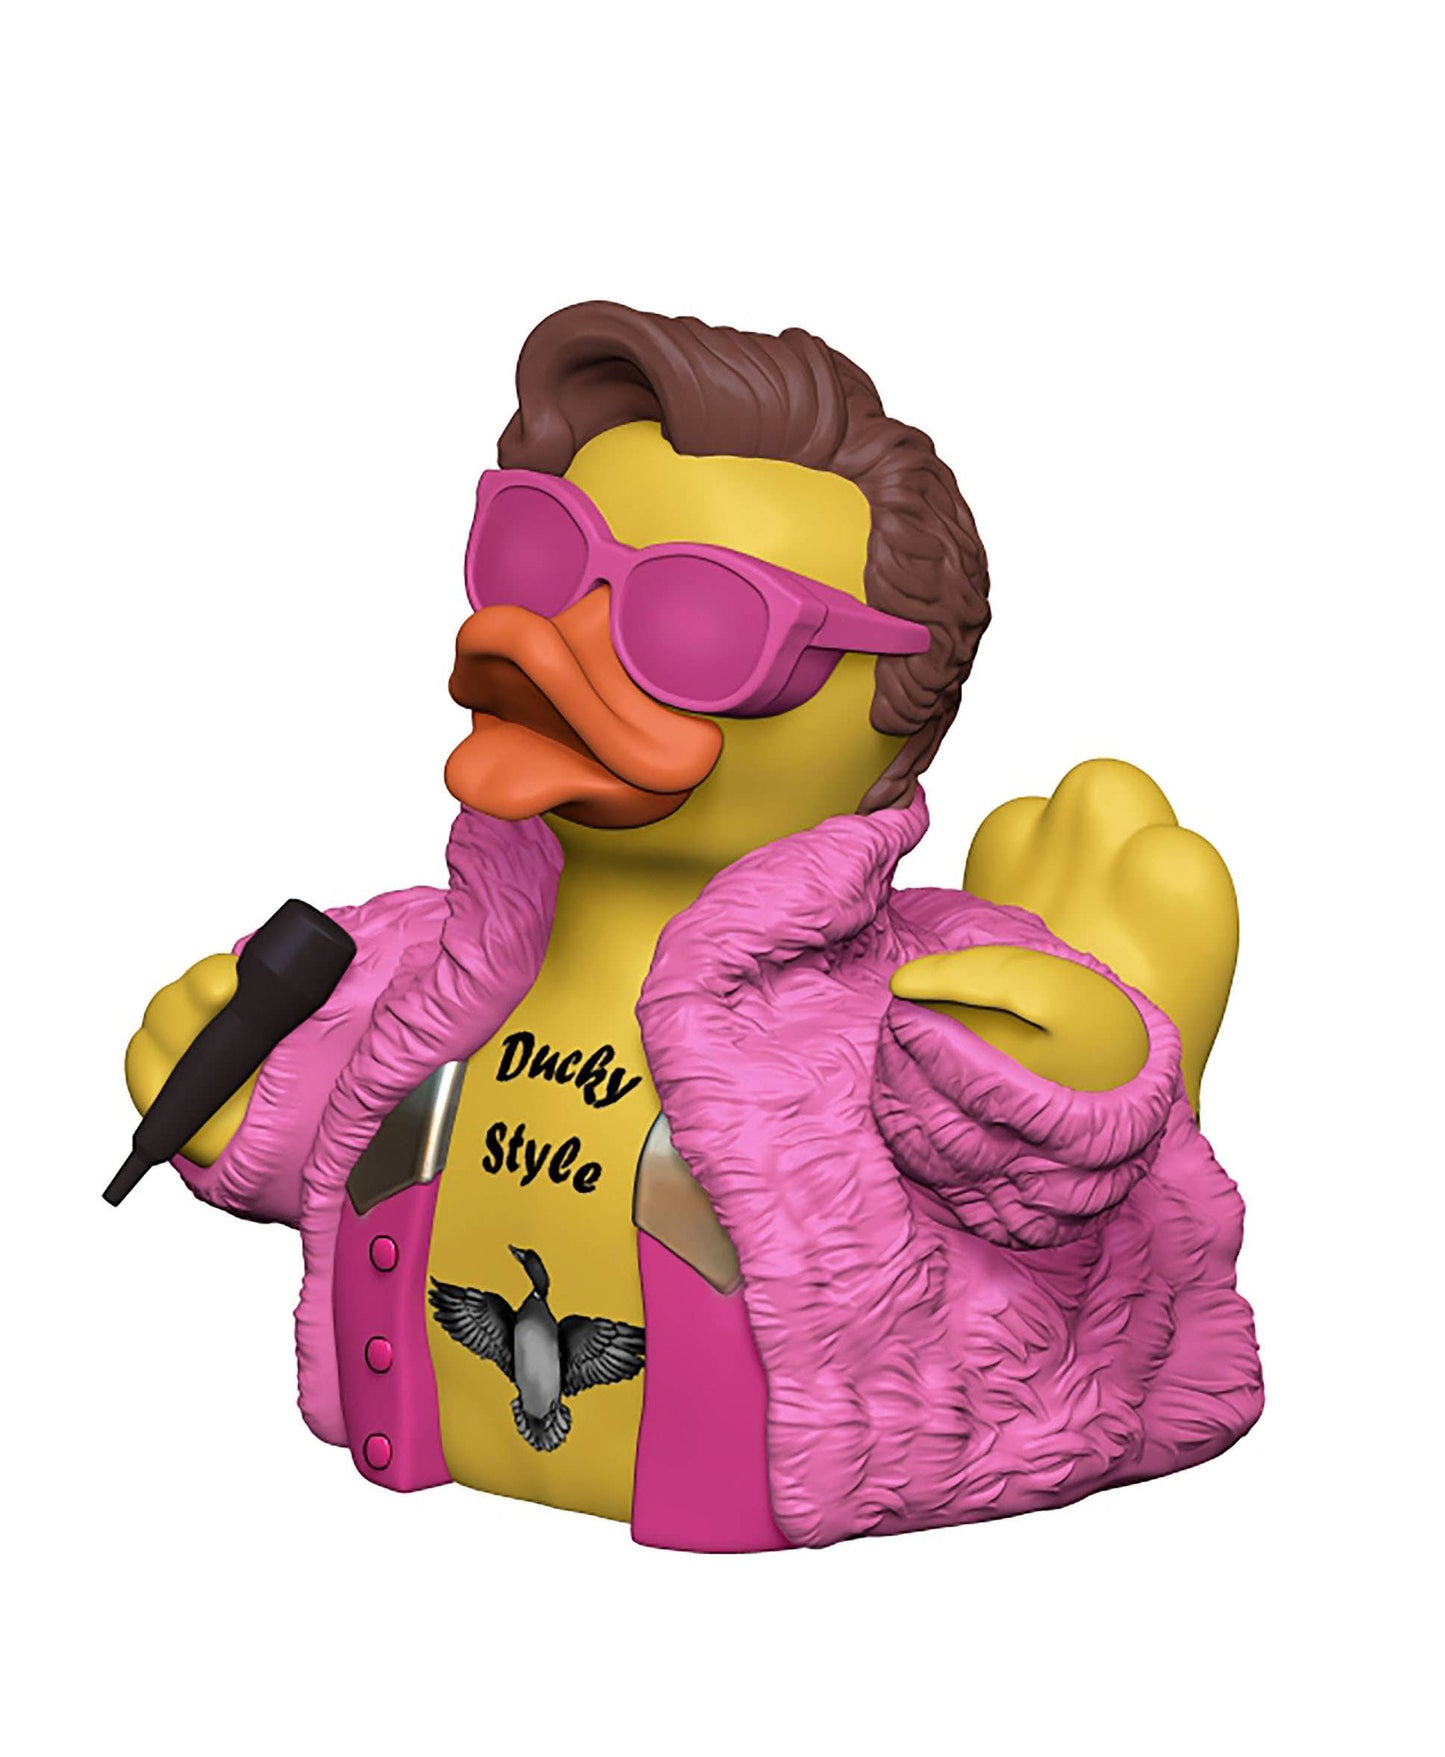 Harry styles rubber duck